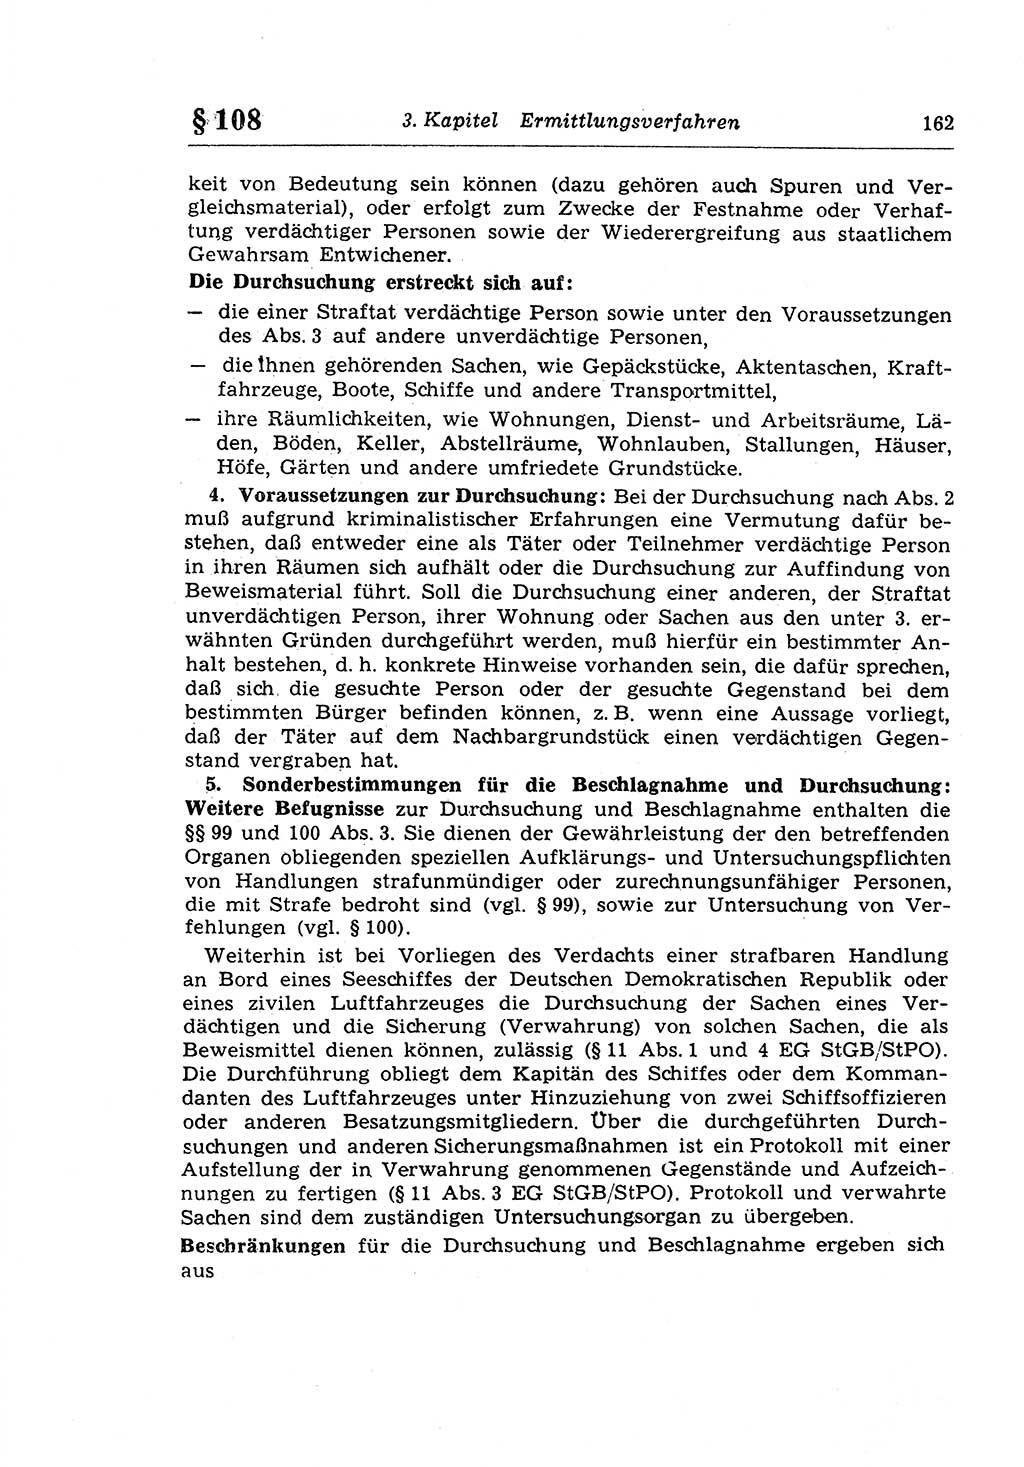 Strafprozeßrecht der DDR (Deutsche Demokratische Republik), Lehrkommentar zur Strafprozeßordnung (StPO) 1968, Seite 162 (Strafprozeßr. DDR Lehrkomm. StPO 19688, S. 162)